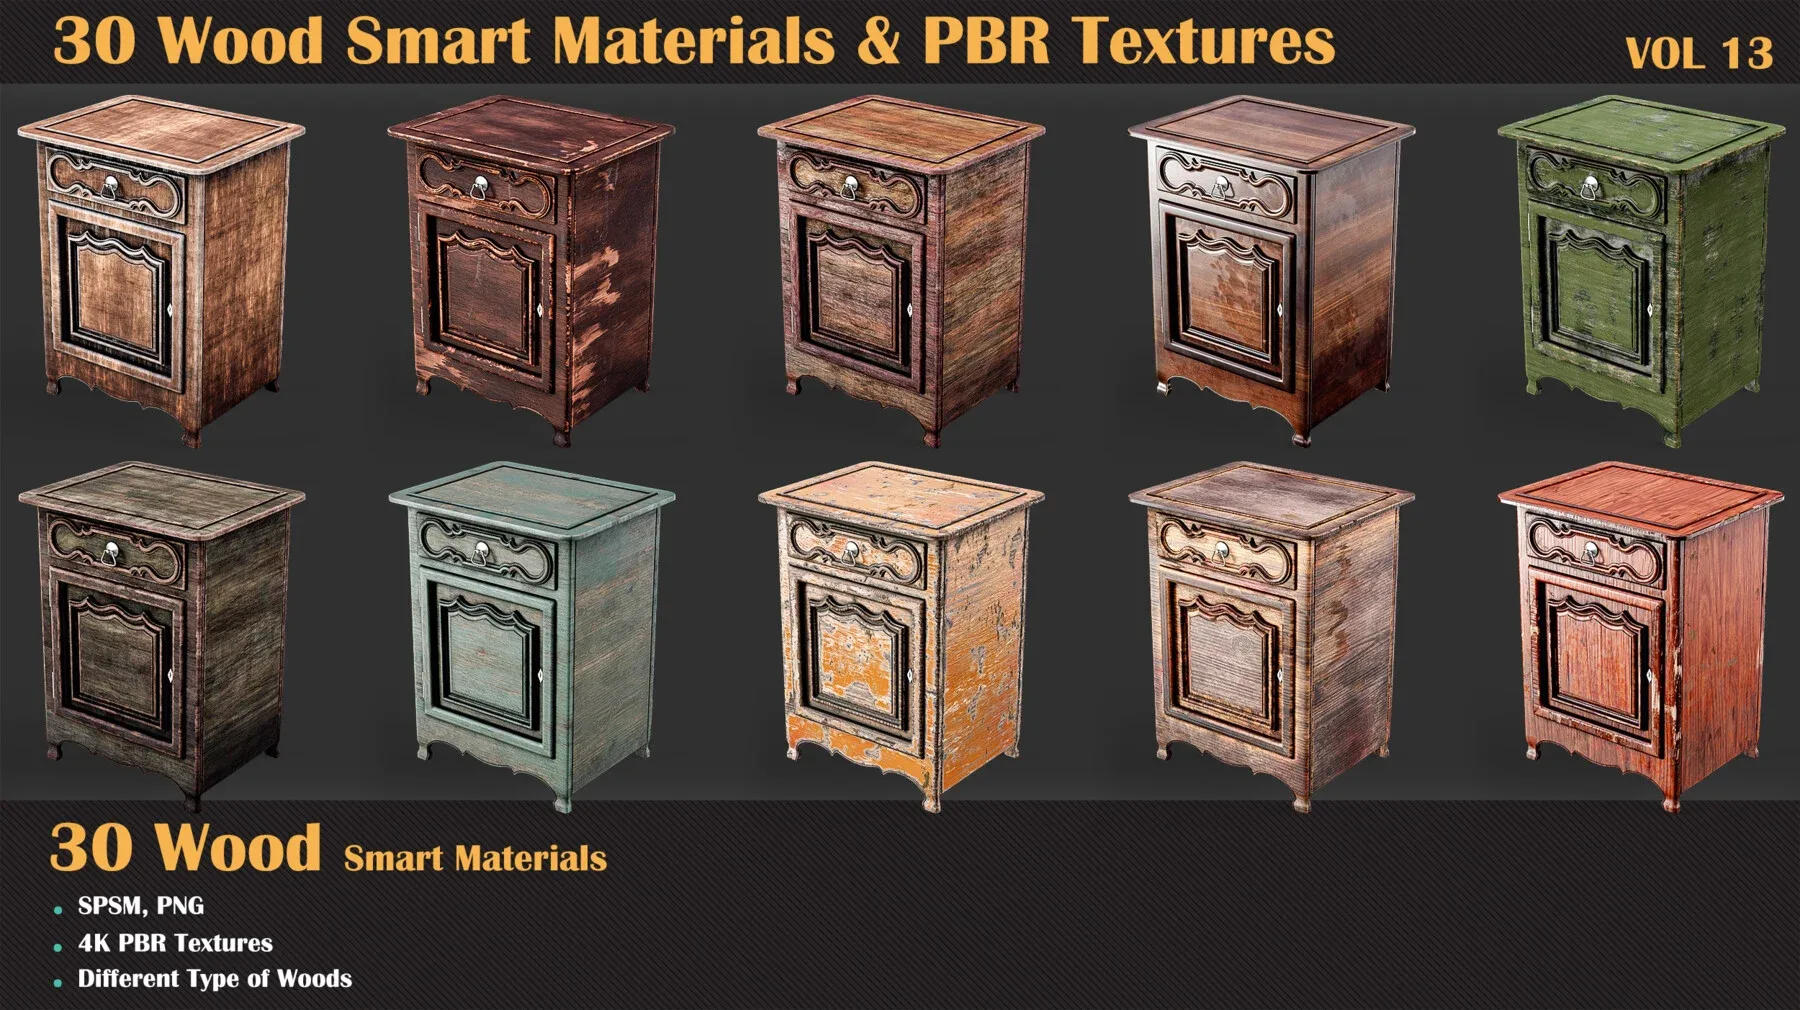 30 Wood Smart Materials & PBR Textures - Vol 13